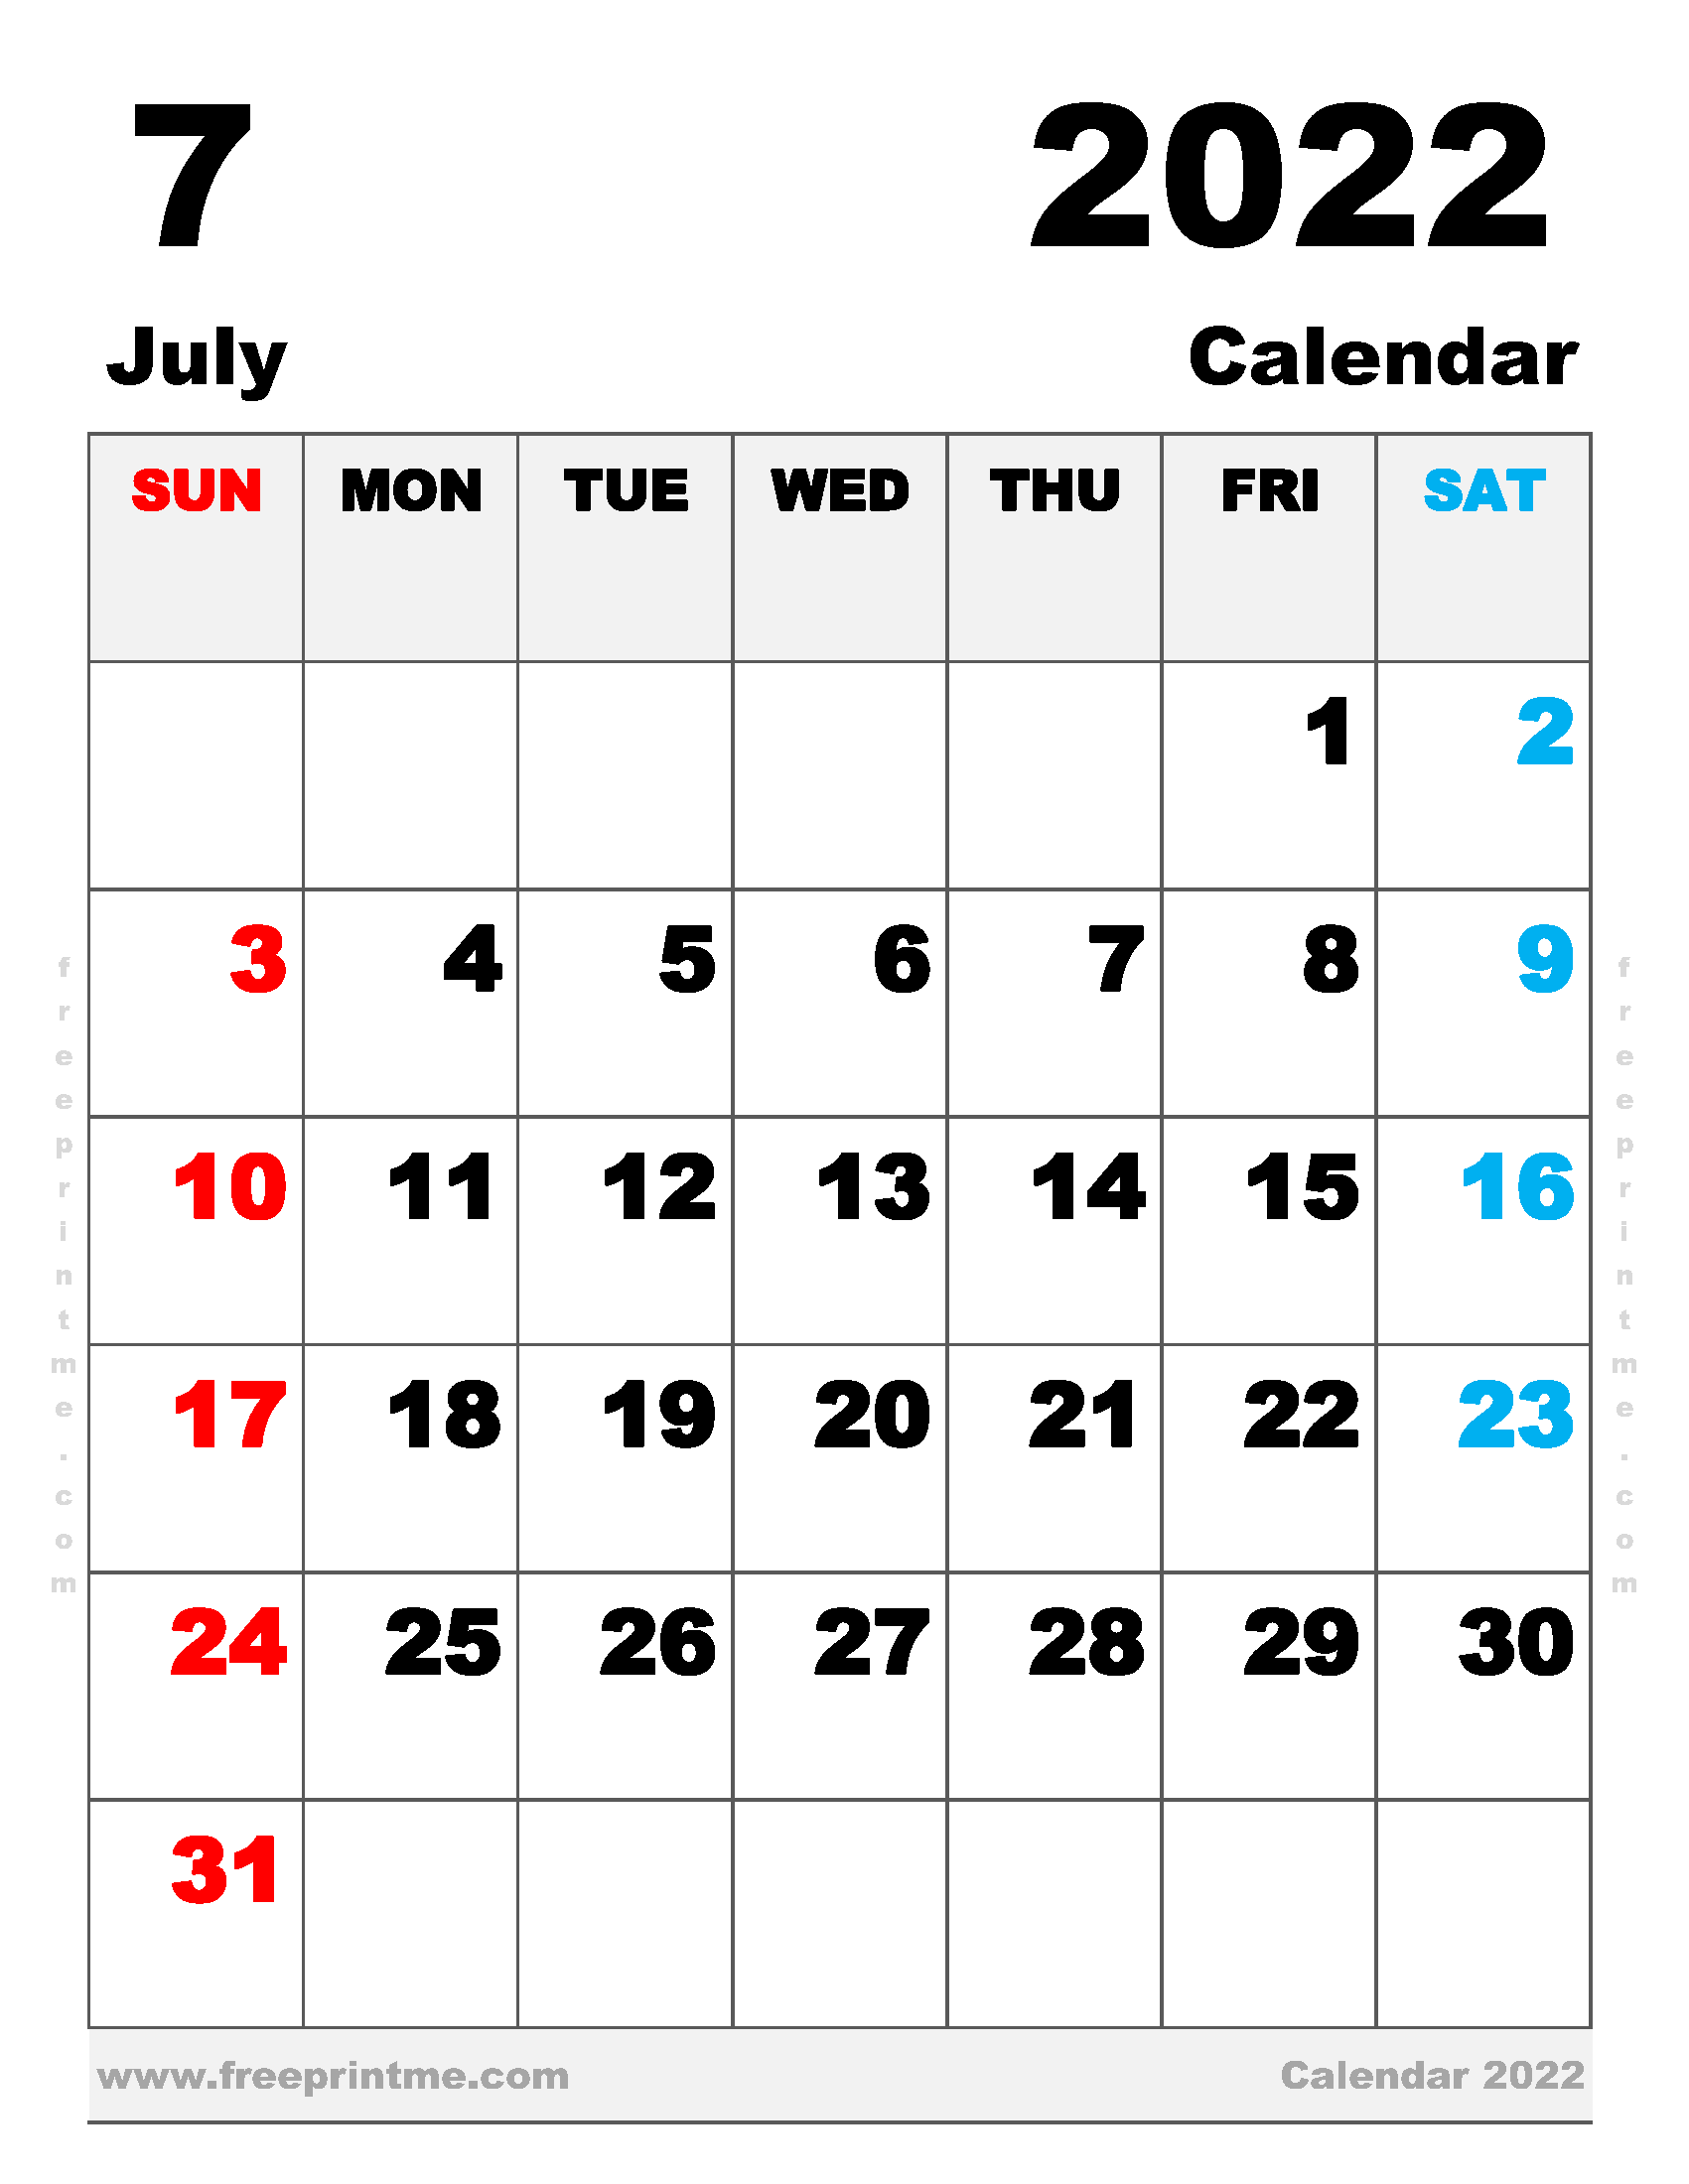 Print June 2022 Calendar Wzikljglt9Xixm